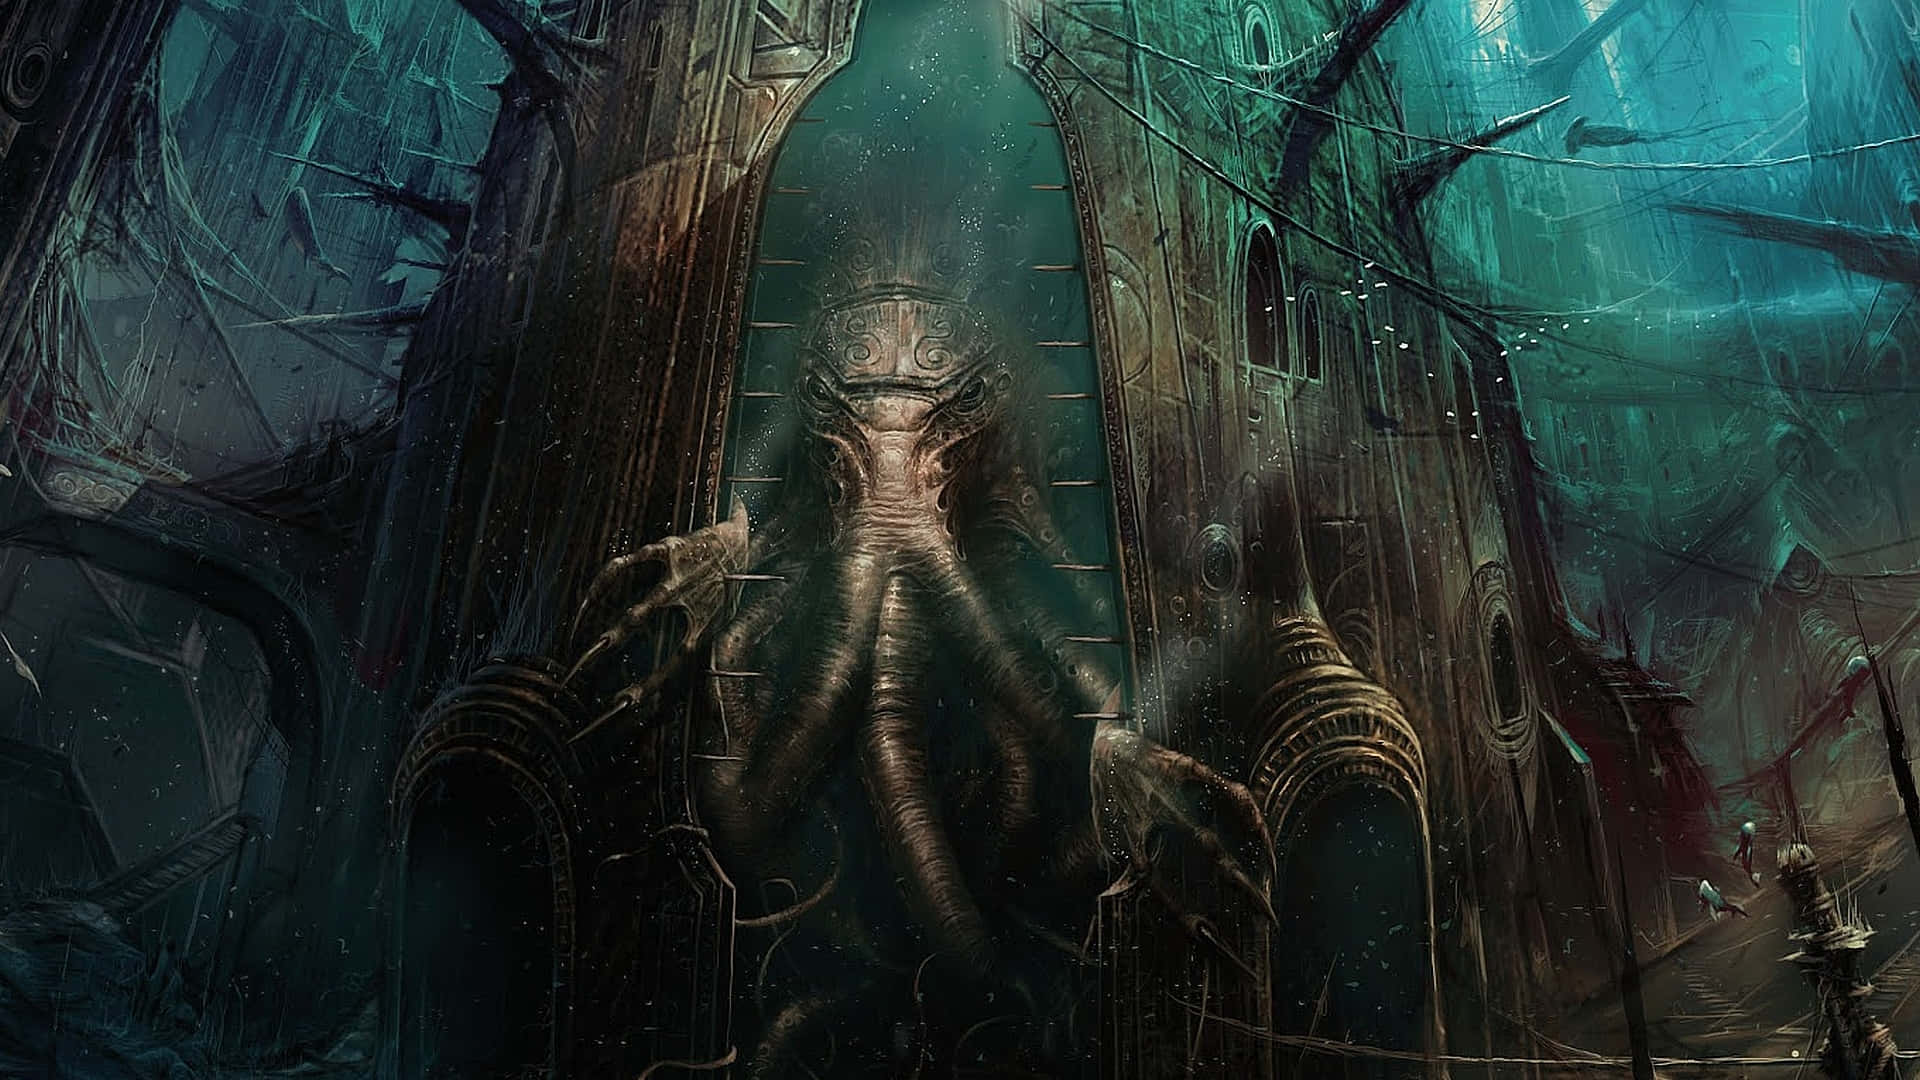 Umaimagem Escura E Sombria De Uma Das Criaturas Mais Icônicas Da Ficção De H.p. Lovecraft - O Poderoso Cthulhu!